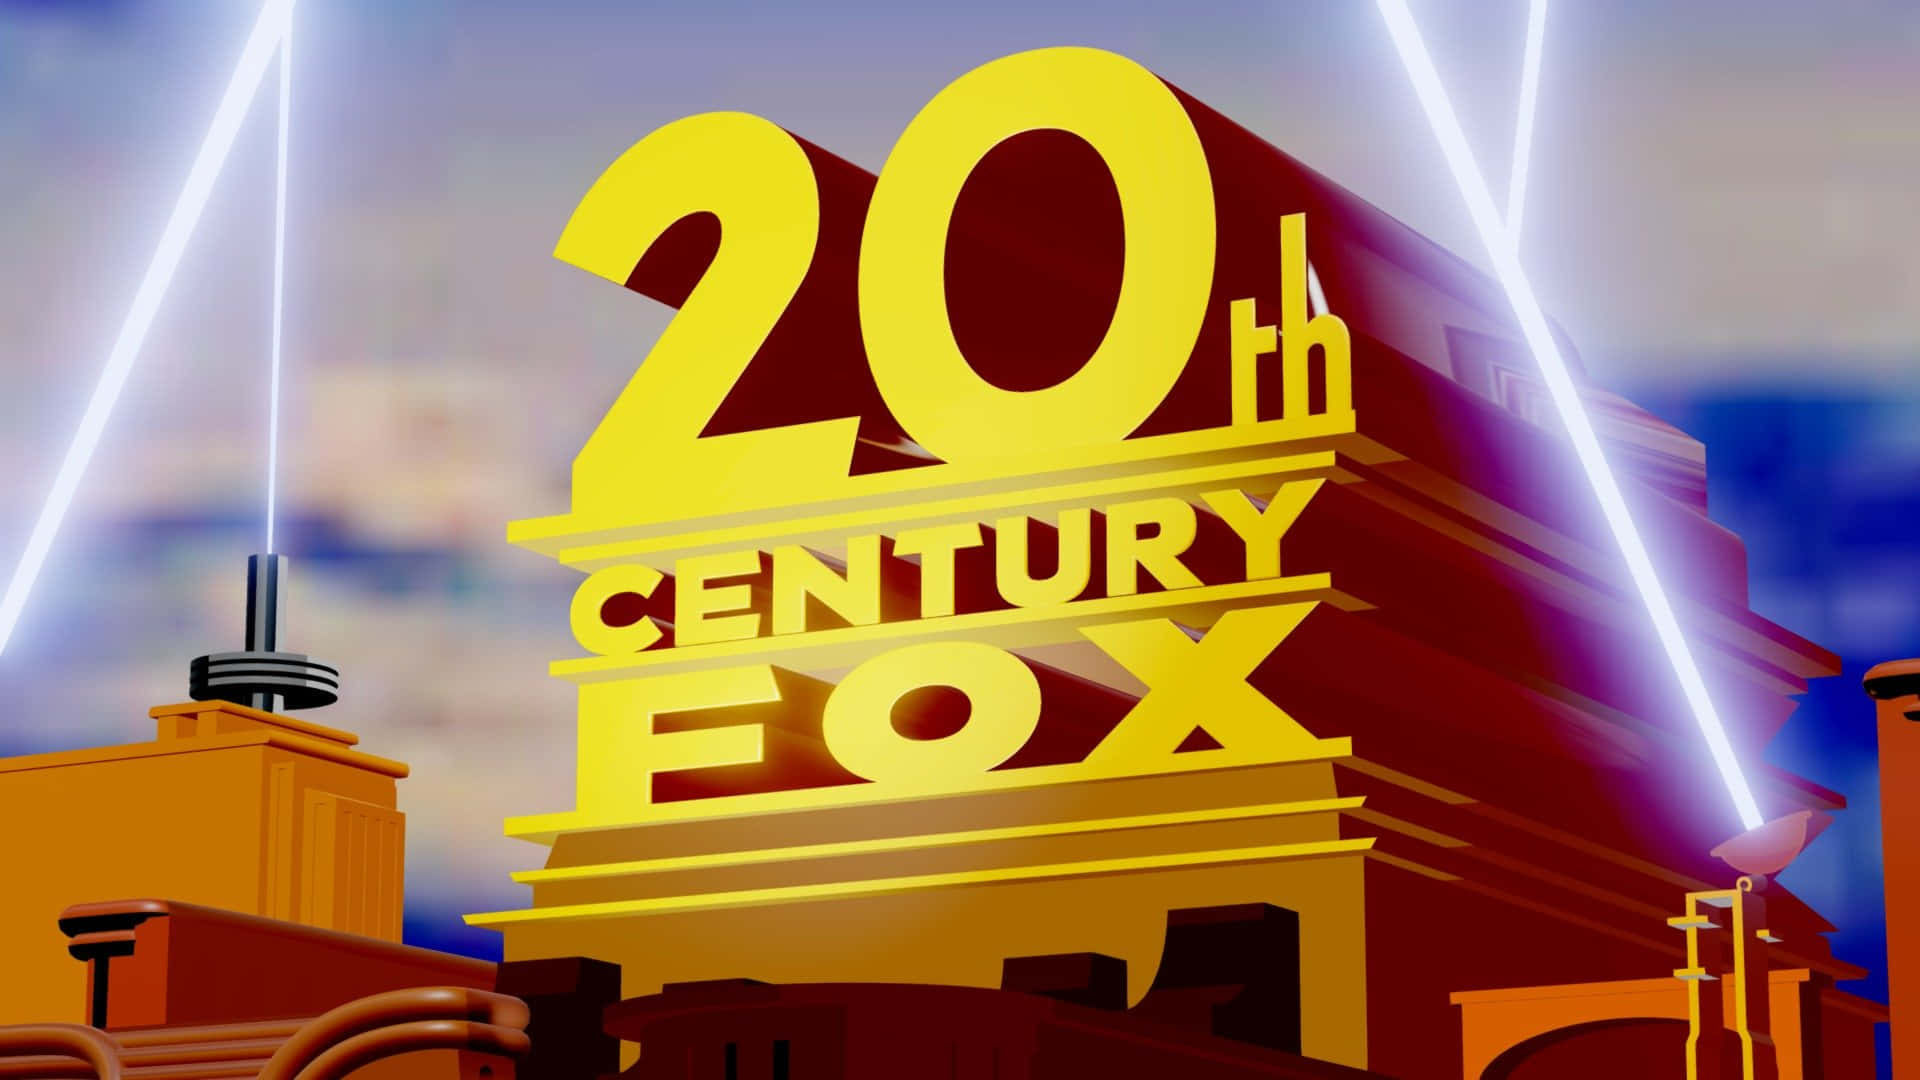 Bright 20th Century Fox Searchlight Logo Picture